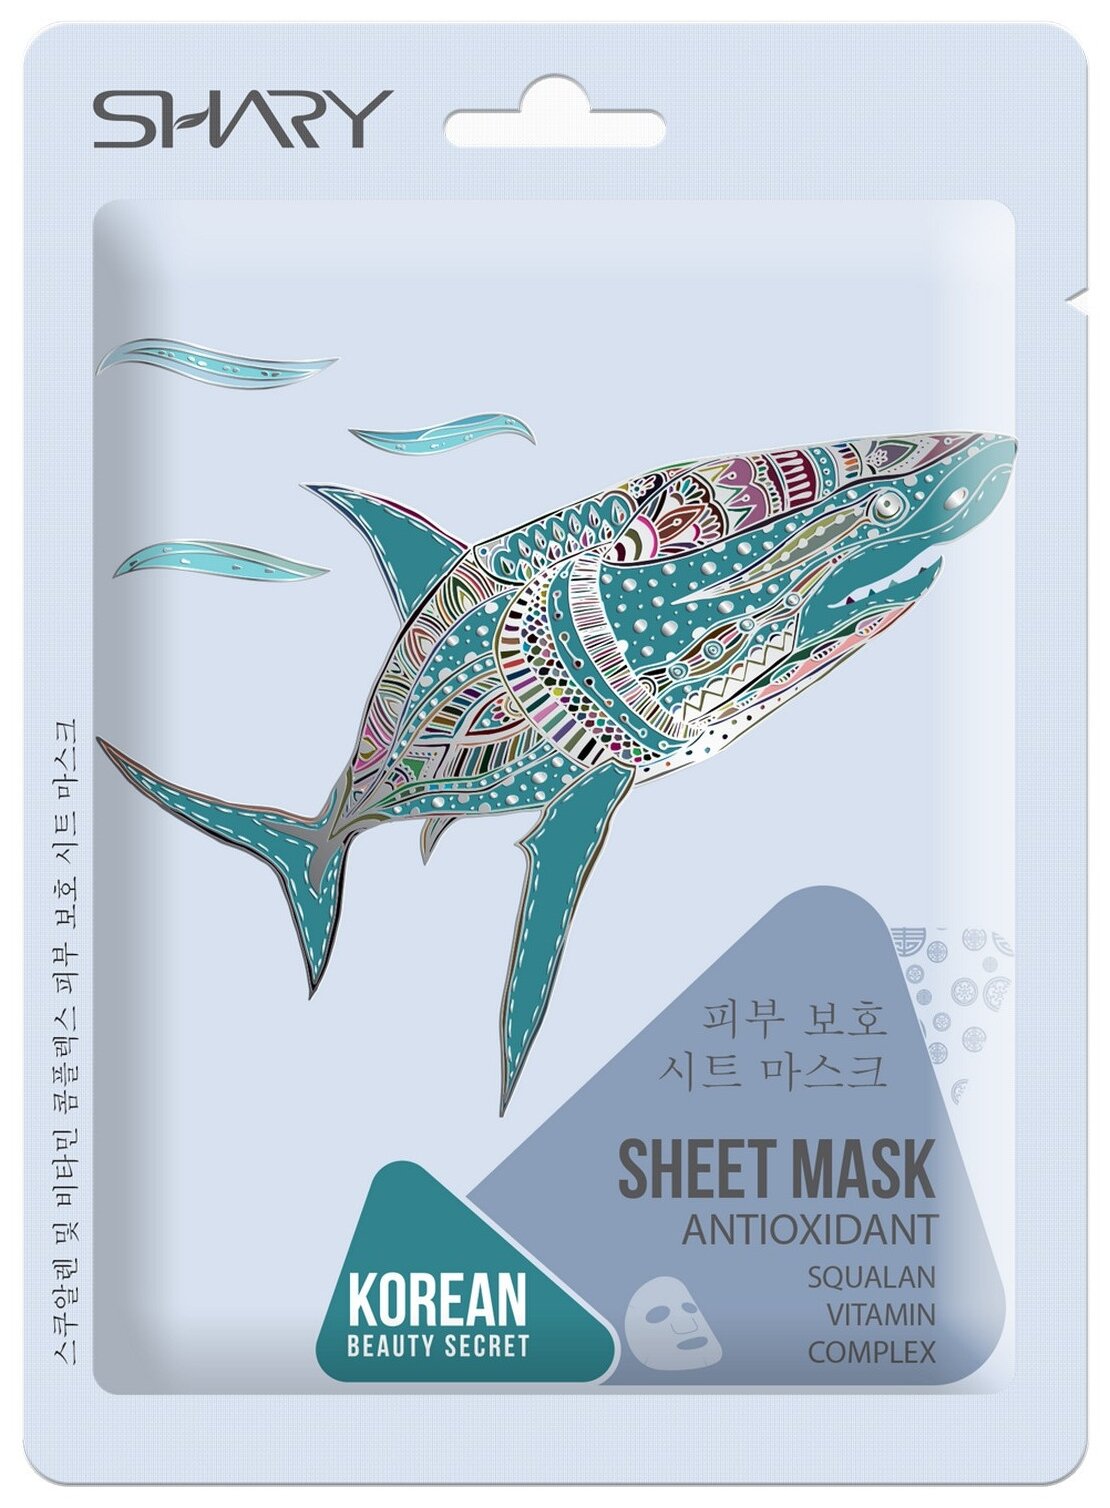 Shary тканевая маска-антиоксидант для лица Сквалан и комплекс витаминов, 25 г